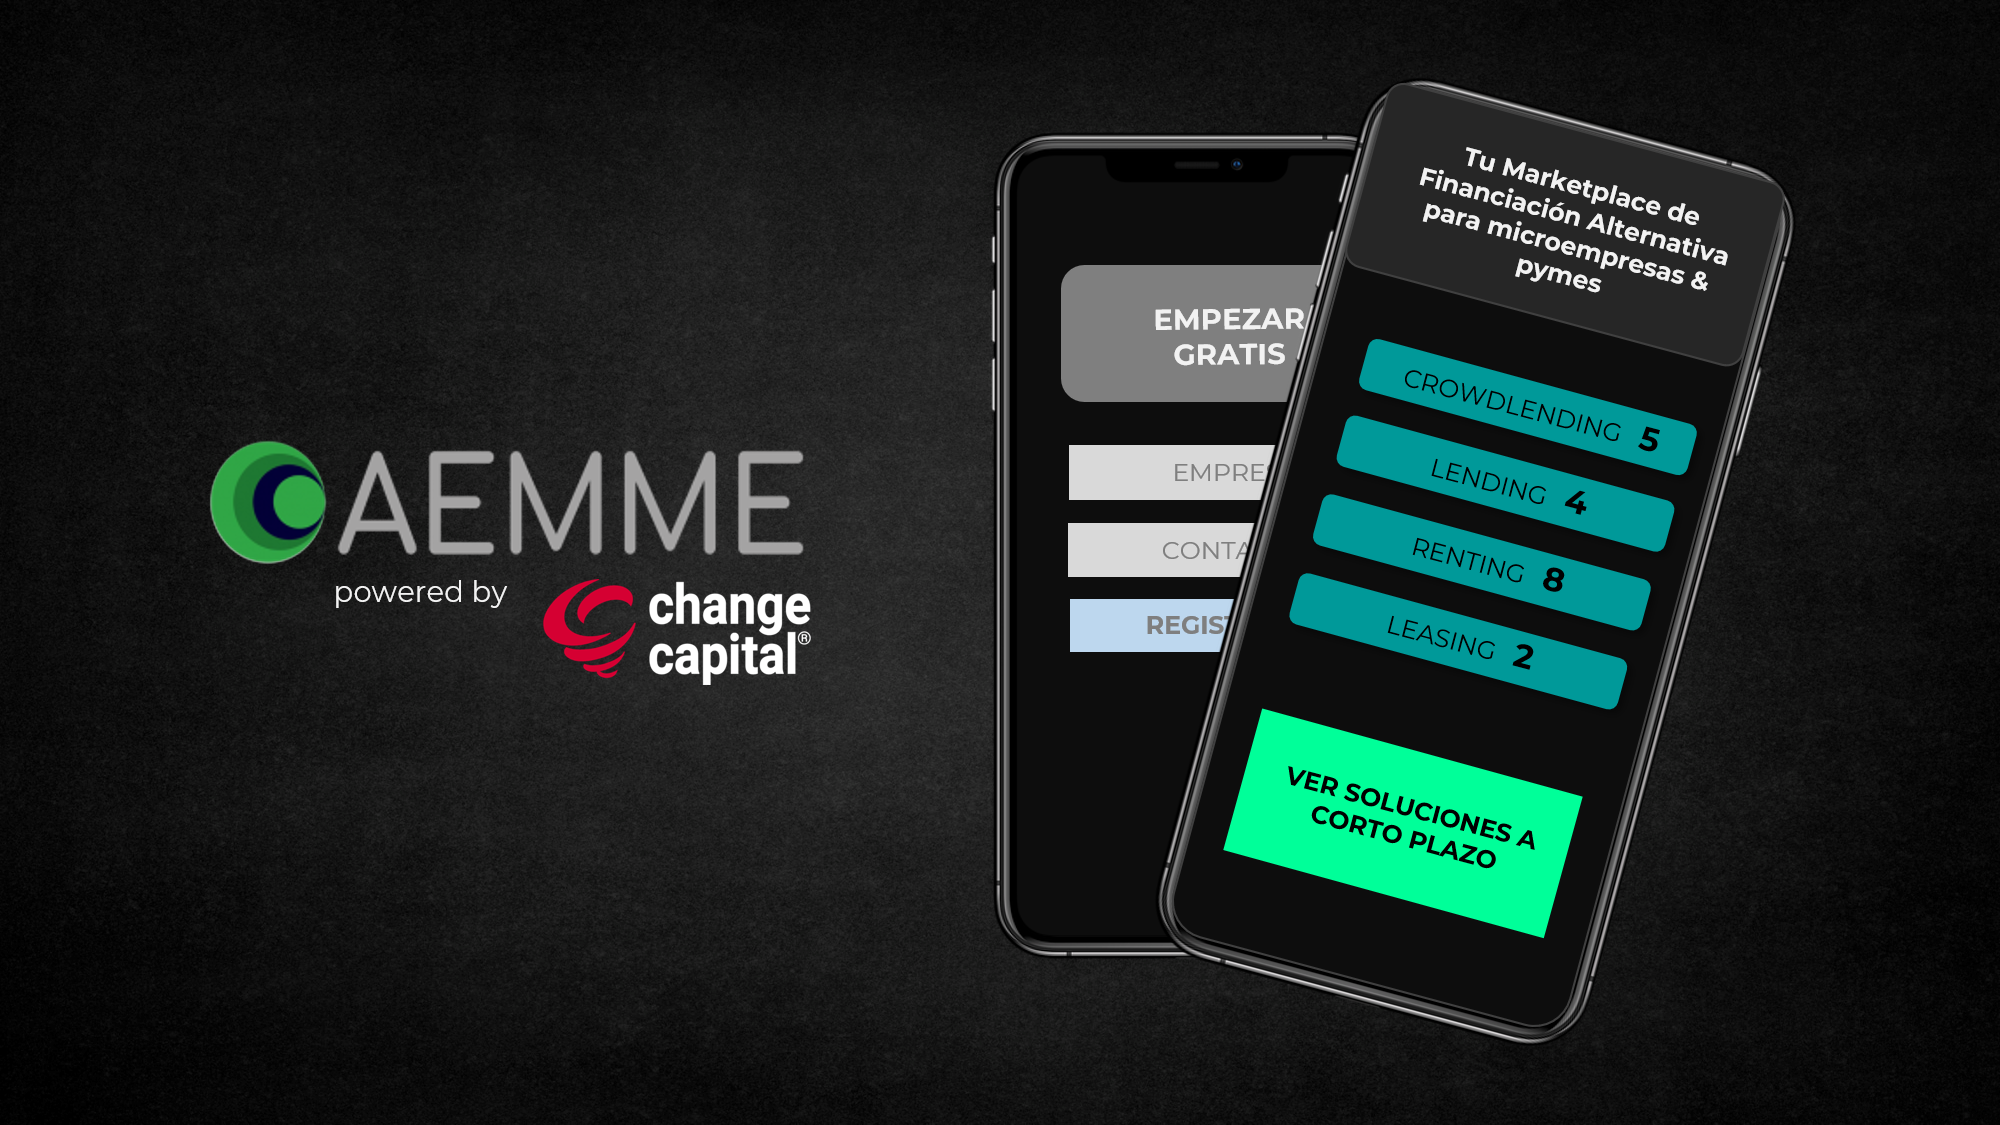 Lee más sobre el artículo AEMME incorpora a Change Capital a su organigrama organizacional, desarrollando así su área de Financiación Alternativa.